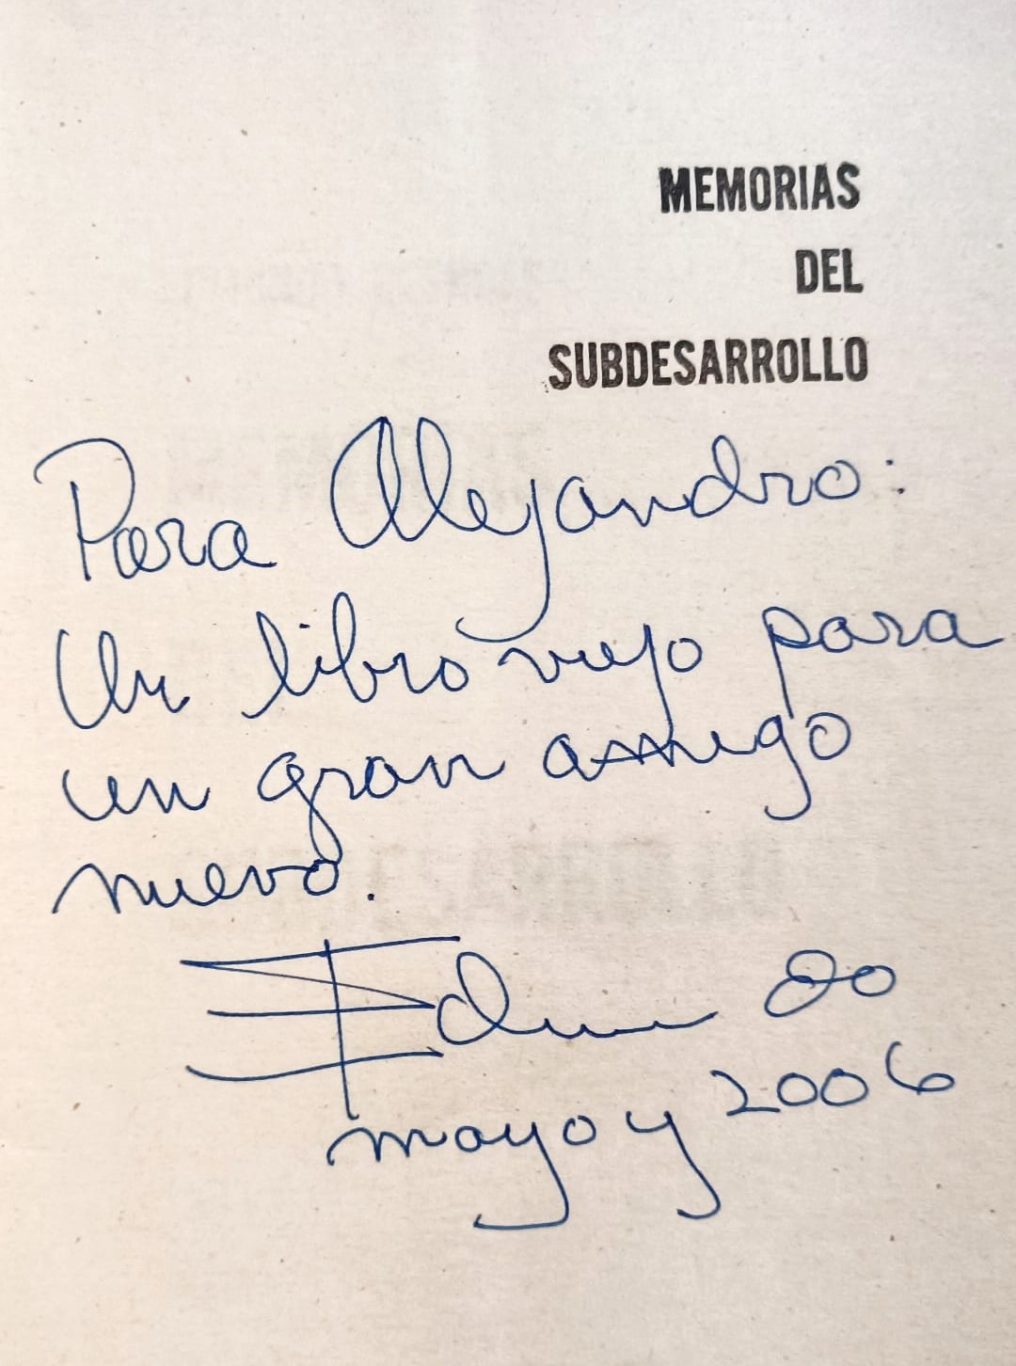 Dedicatoria que escribió Desnoes en 2006 en el ejemplar comprado por Luque en los 90, cuando se encontraron en Sevilla, mayo de 2006.